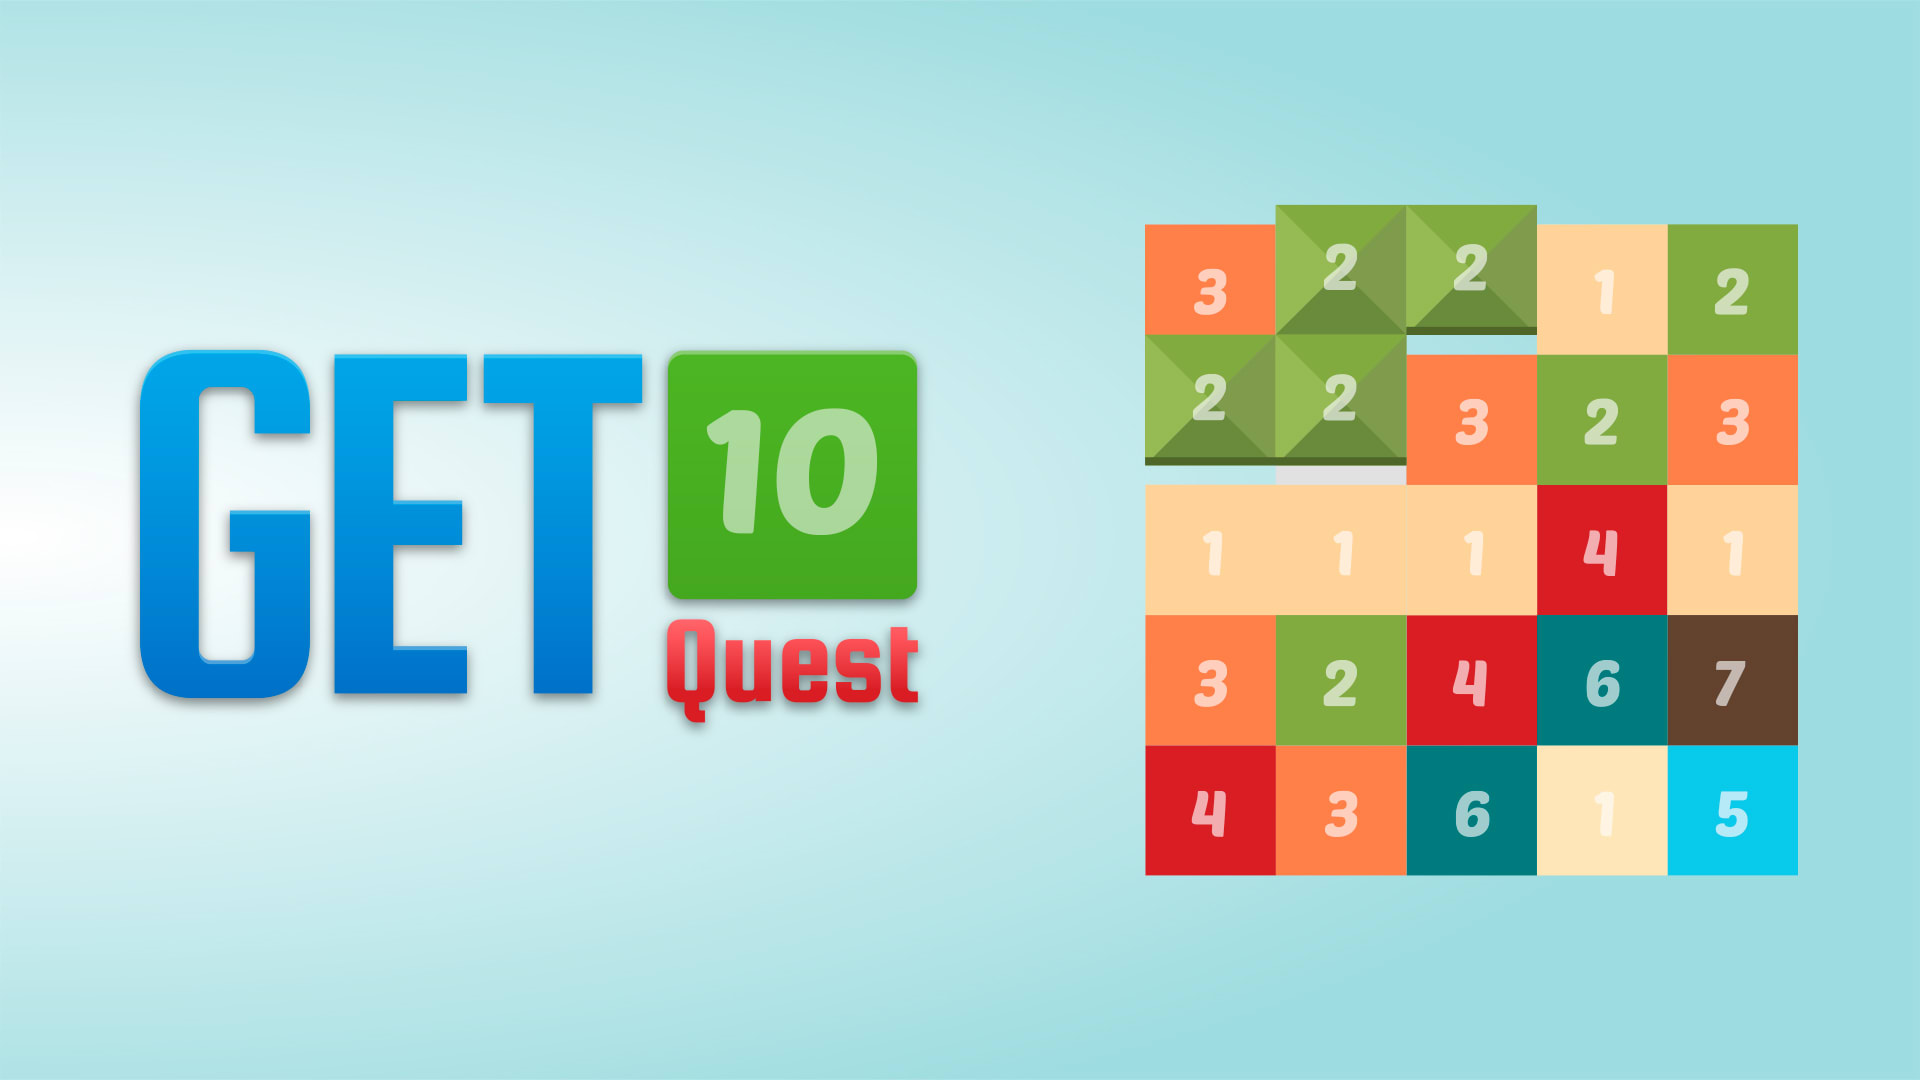 Get 10 quest